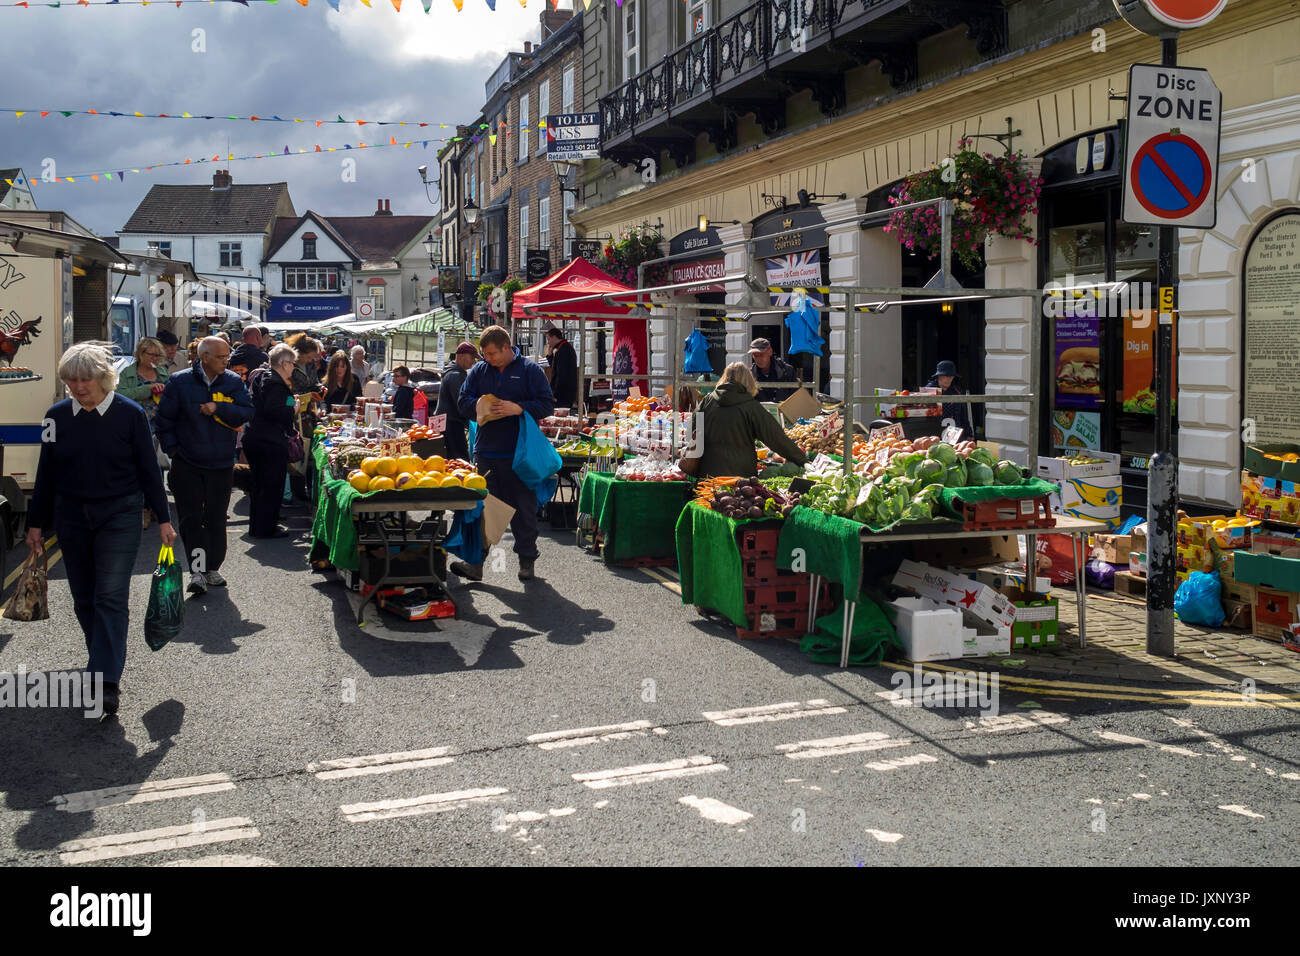 Regelmäßige wöchentliche Markt in Knaresborough North Yorkshire besetzt Menge und Obst und Gemüse auf dem Display. Stockfoto